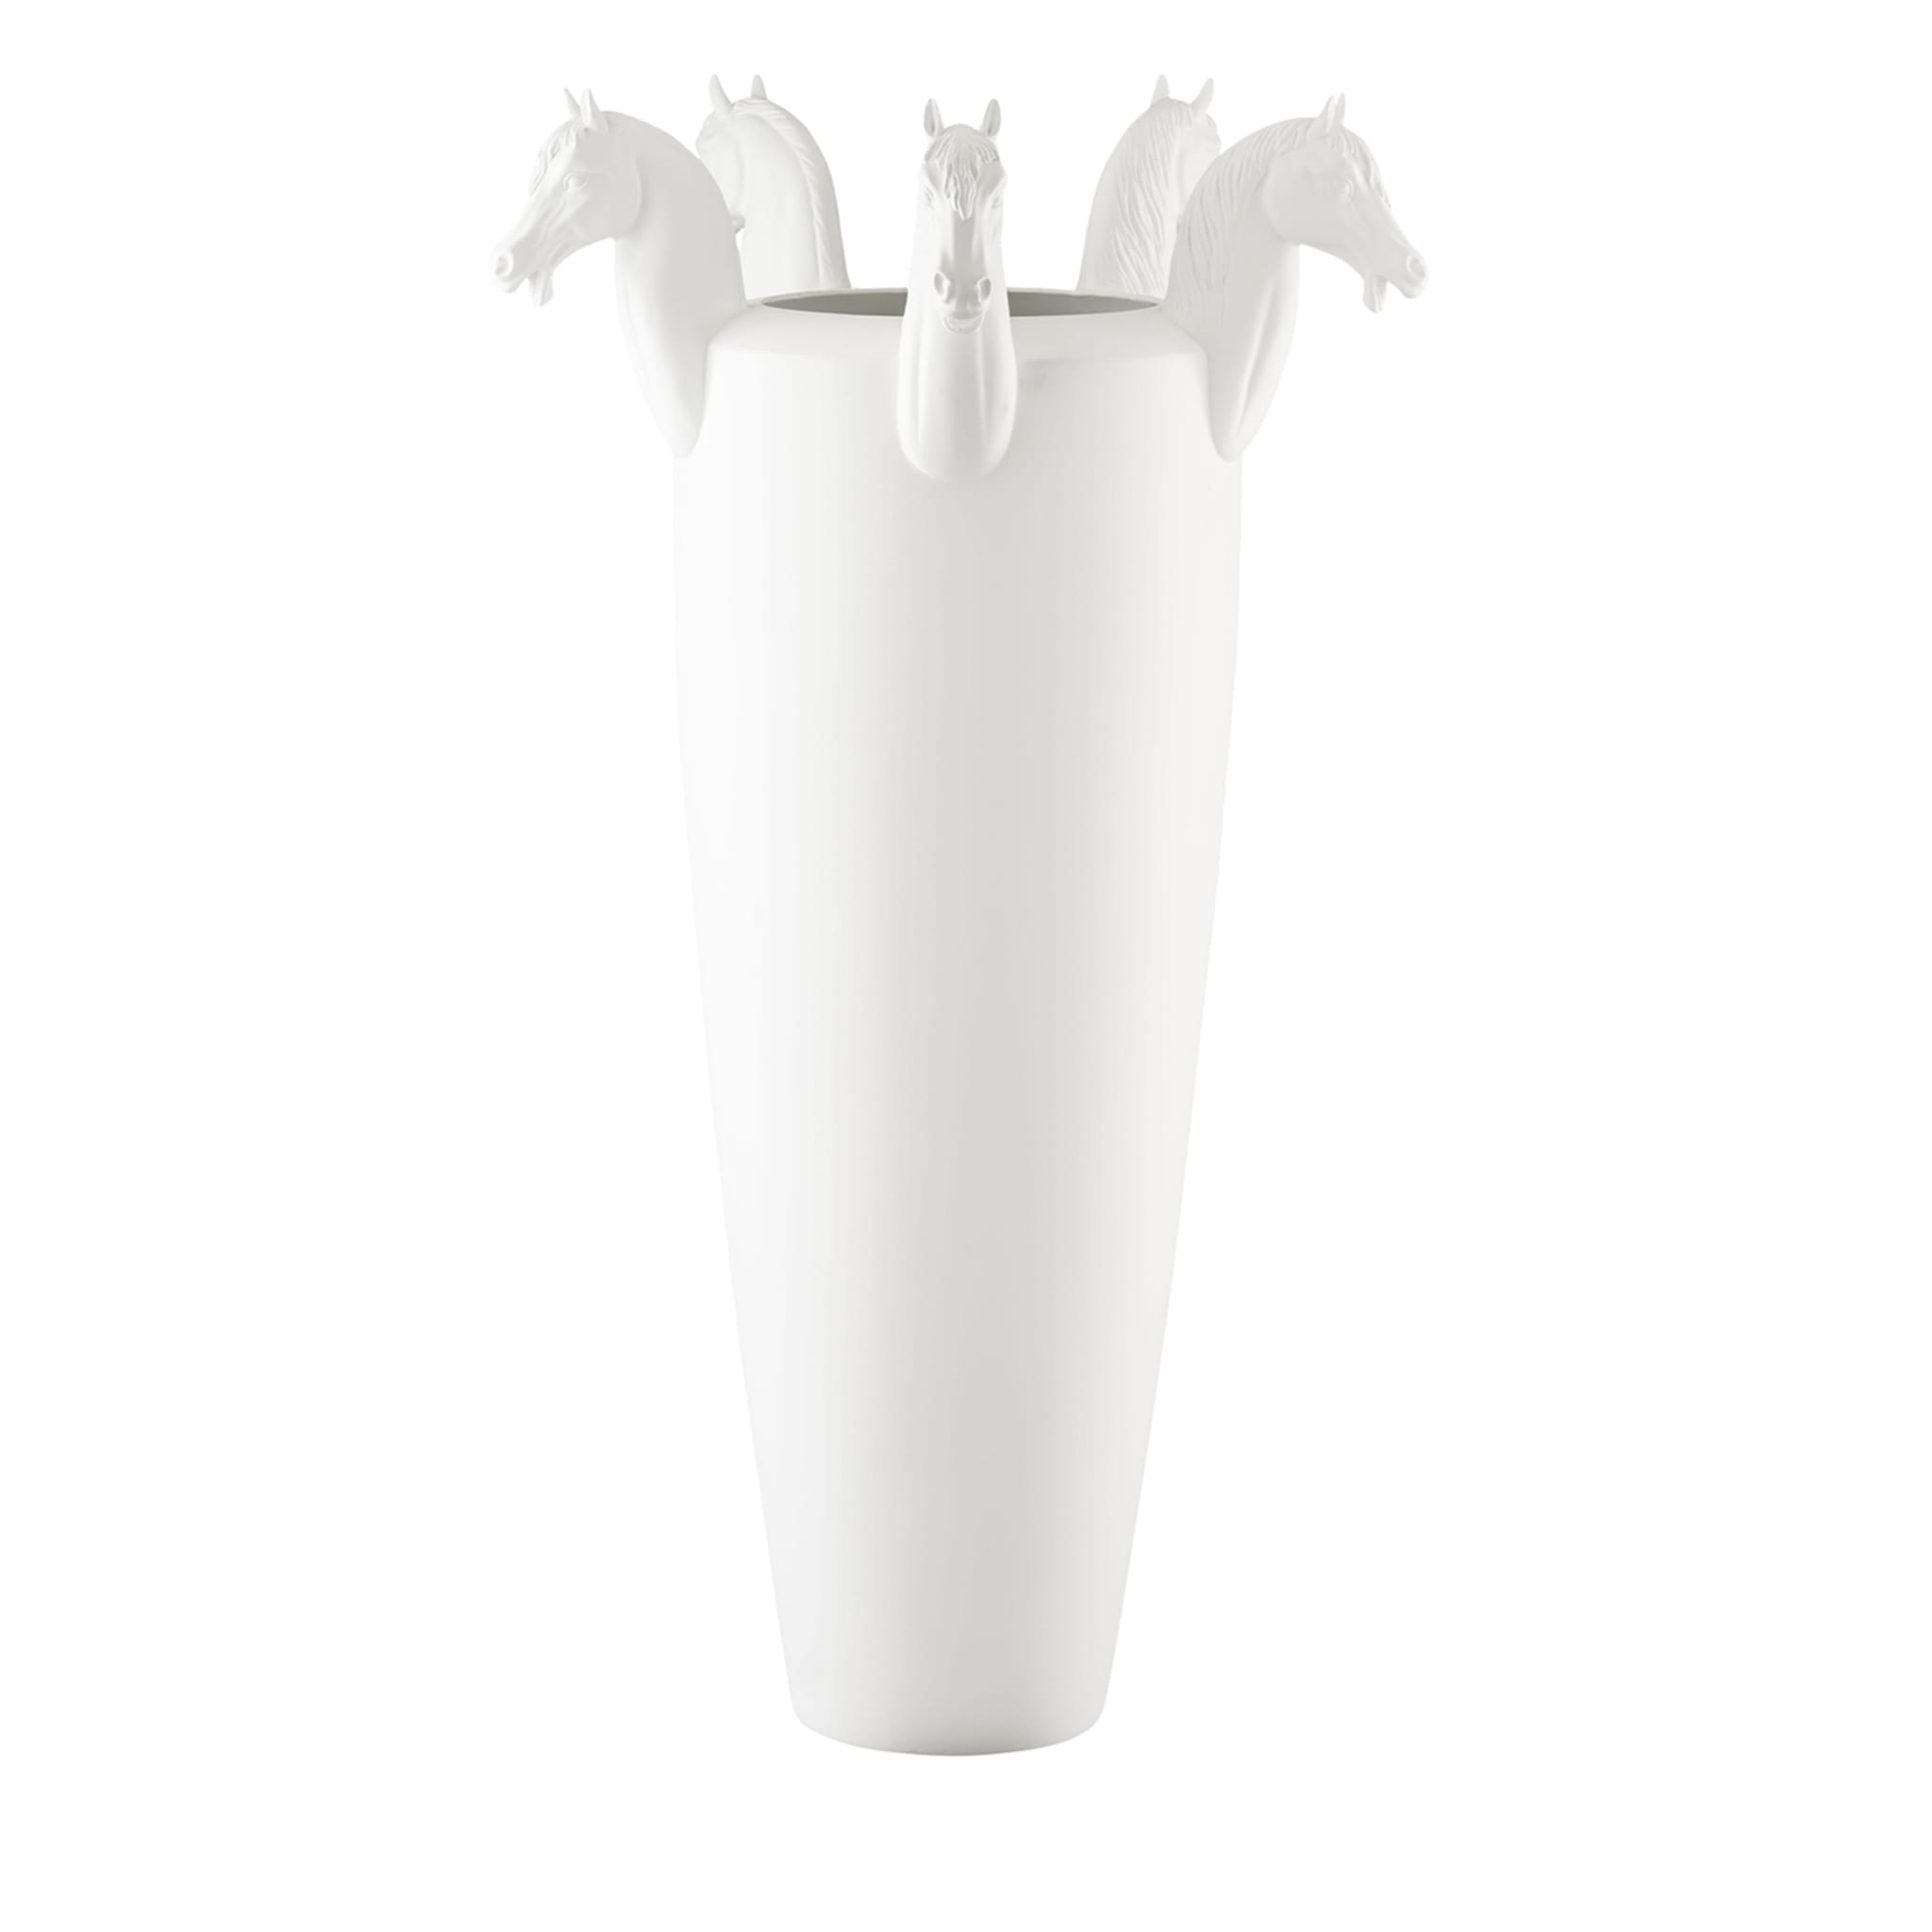 Obice Horse 5 Köpfe Weiß Dekorative Vase - Hauptansicht